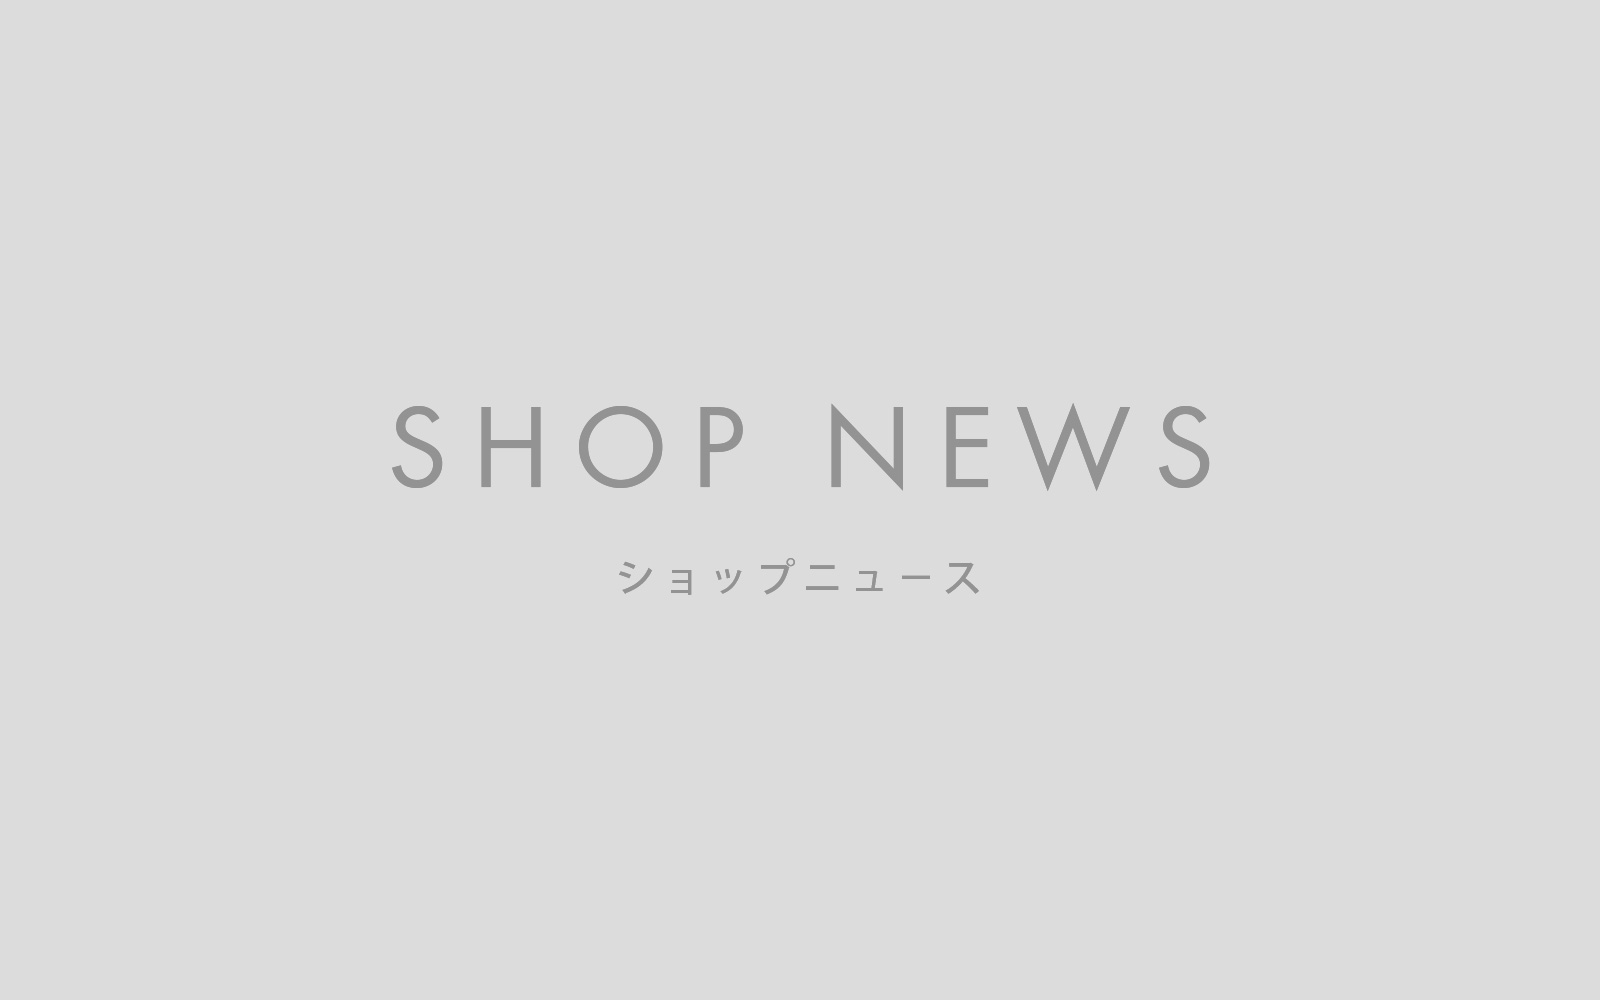 【SHOP NEWS】2021年 GW休業のお知らせ